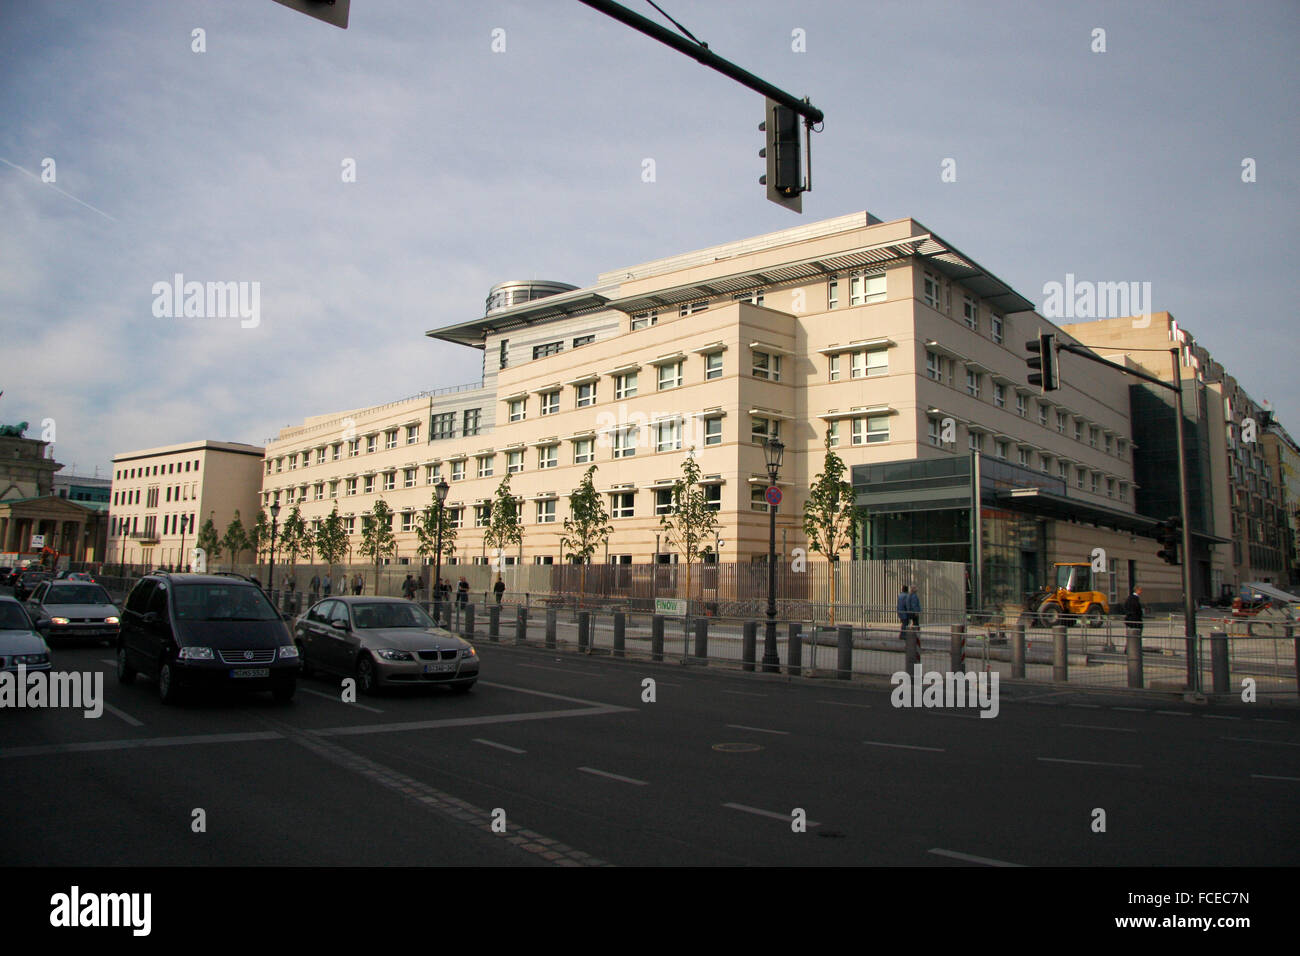 Festung Berlin-Mitte: die neue US-amerikanische Botschaft am Pariser Platz, Berlin-Mitte. Stock Photo